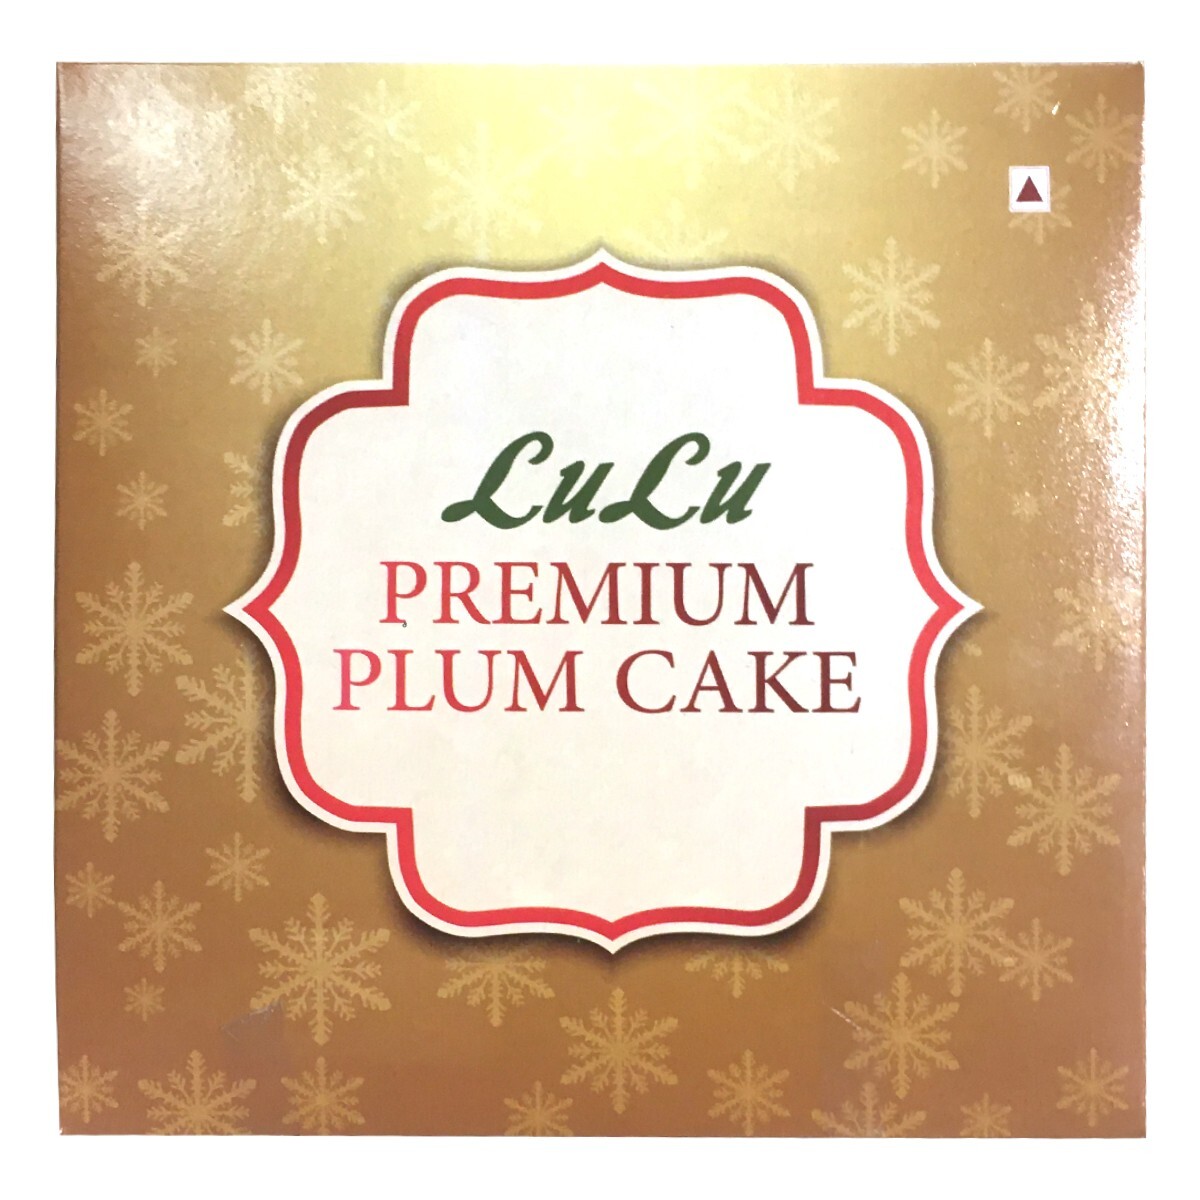 Premium Plum Cake 500g